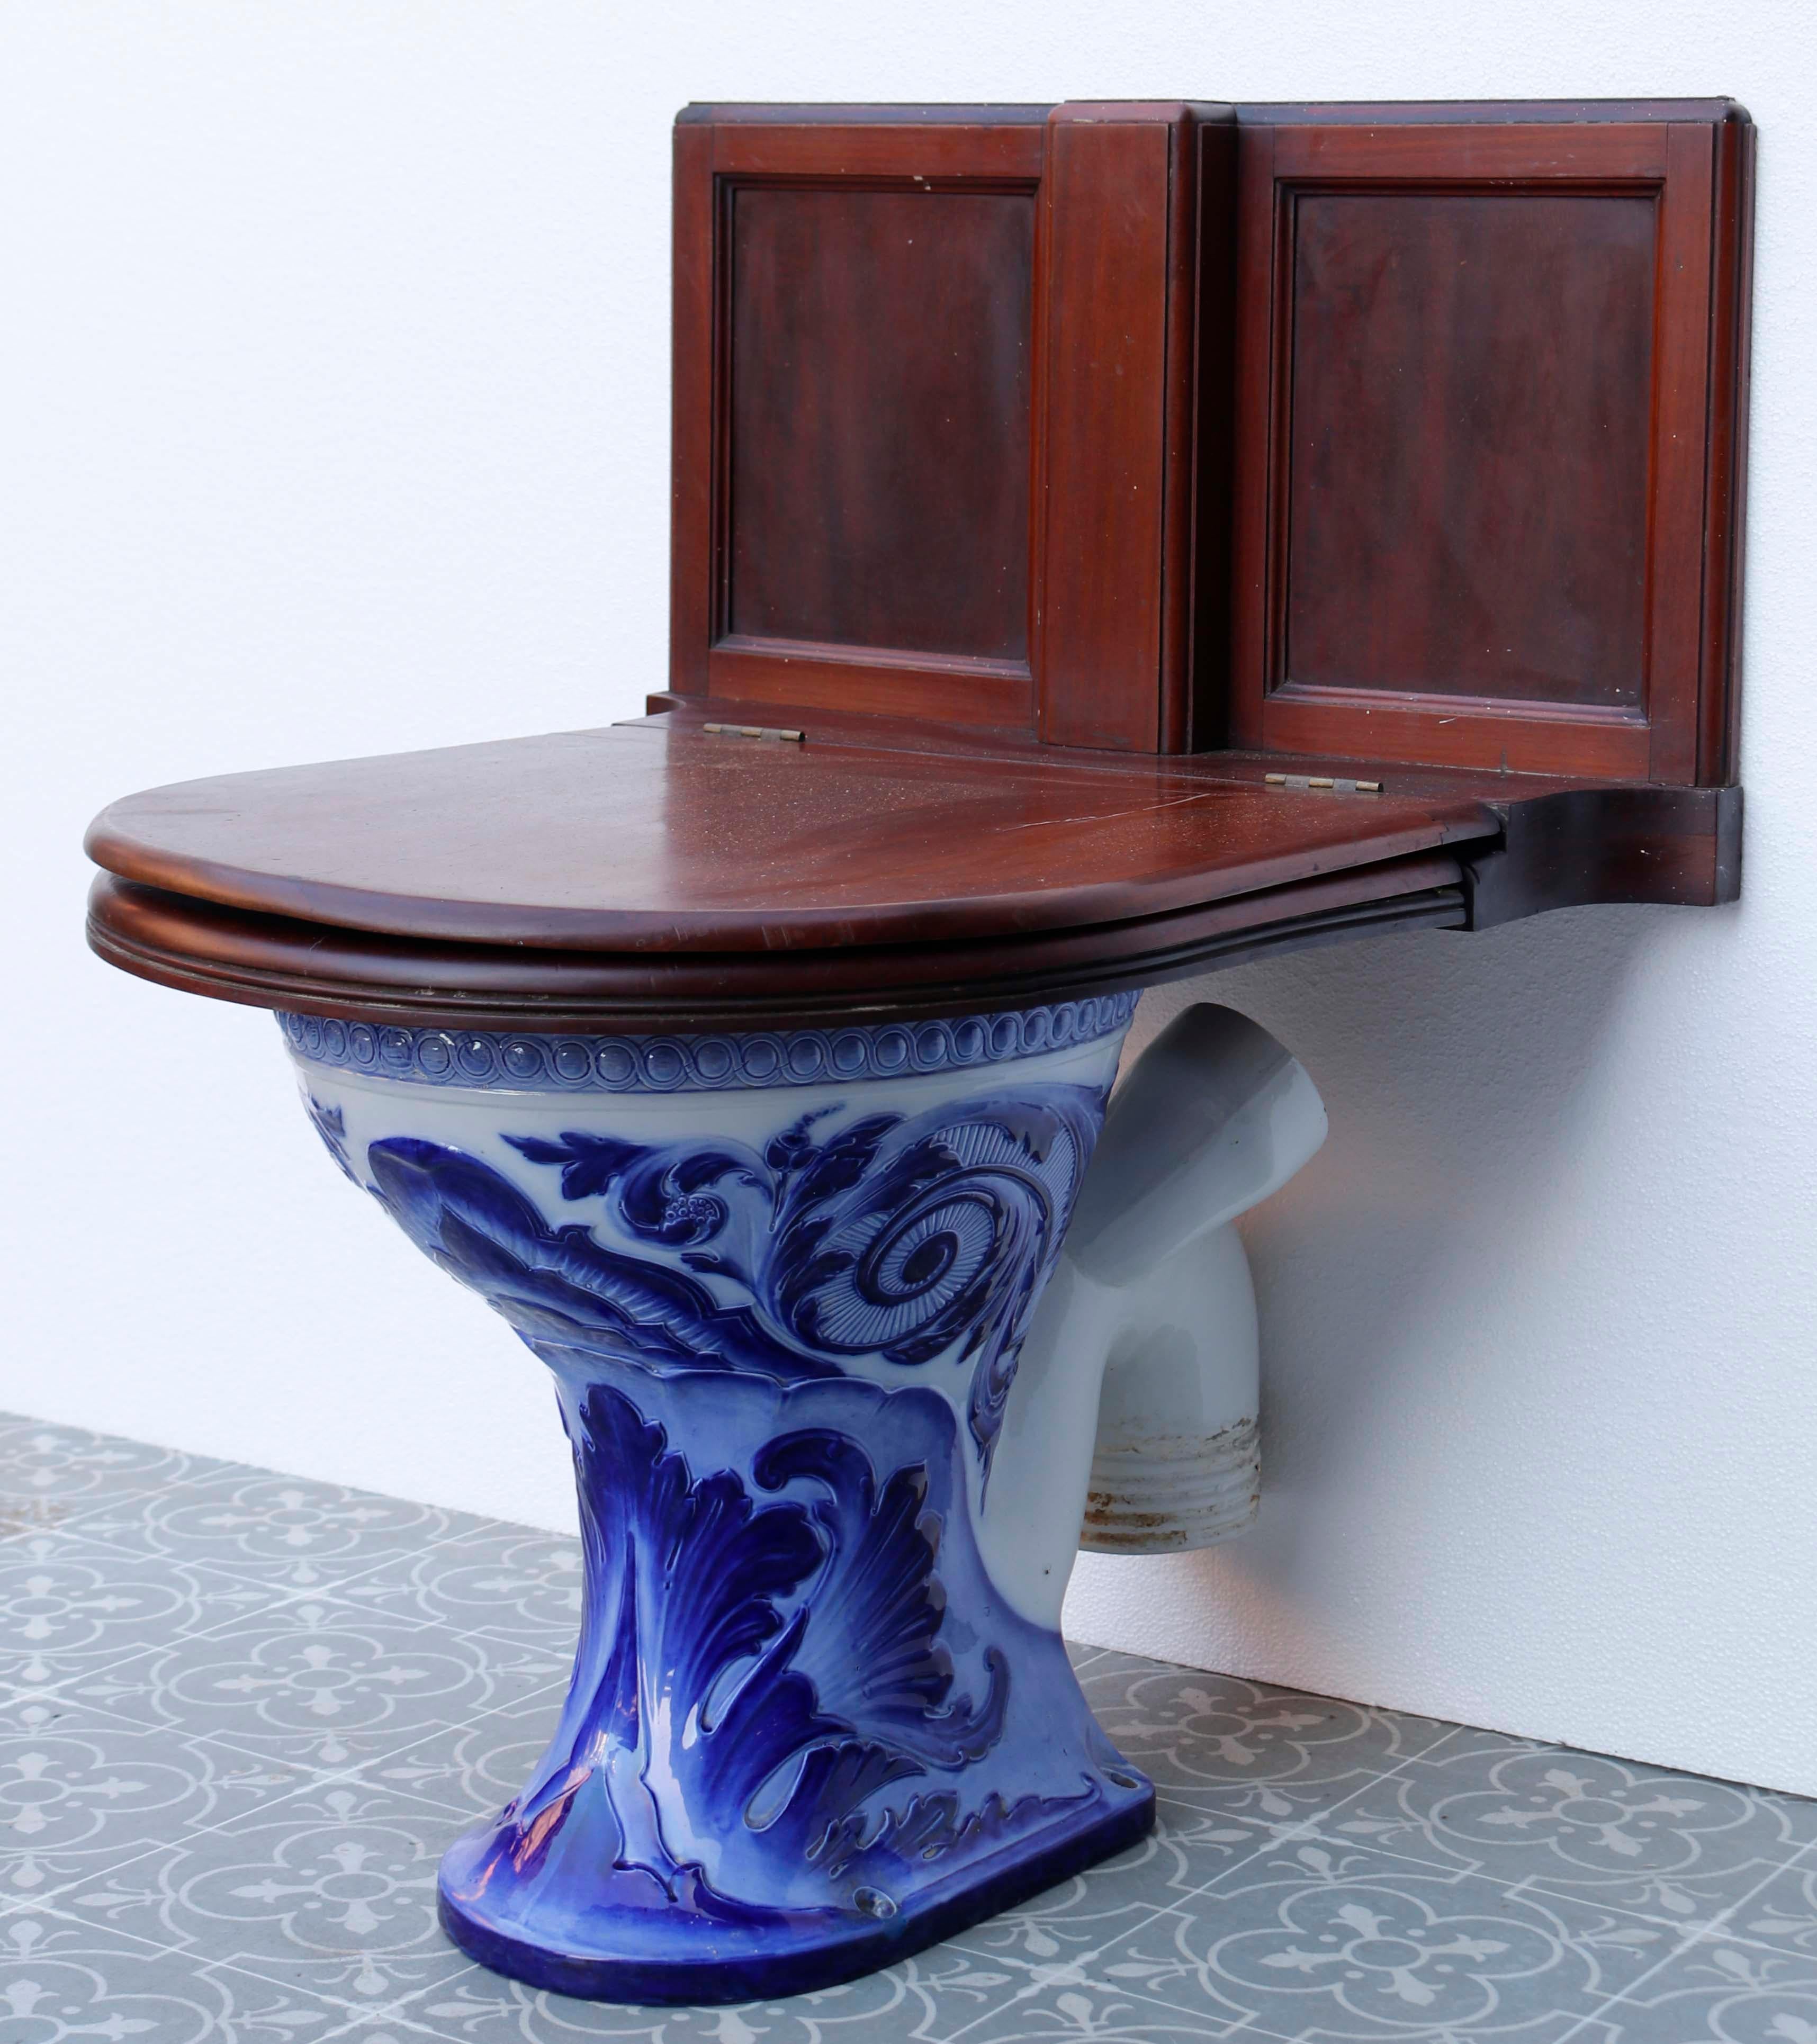 Antike glasierte Toilette von Doulton und Co. Eine Toilette aus blau glasiertem Porzellan mit markanten Originalfiguren. Der Sitz aus Mahagoniholz ergänzt die auffällige blau-weiße Porzellantoilette darunter, die das leuchtende Blau zum Leben